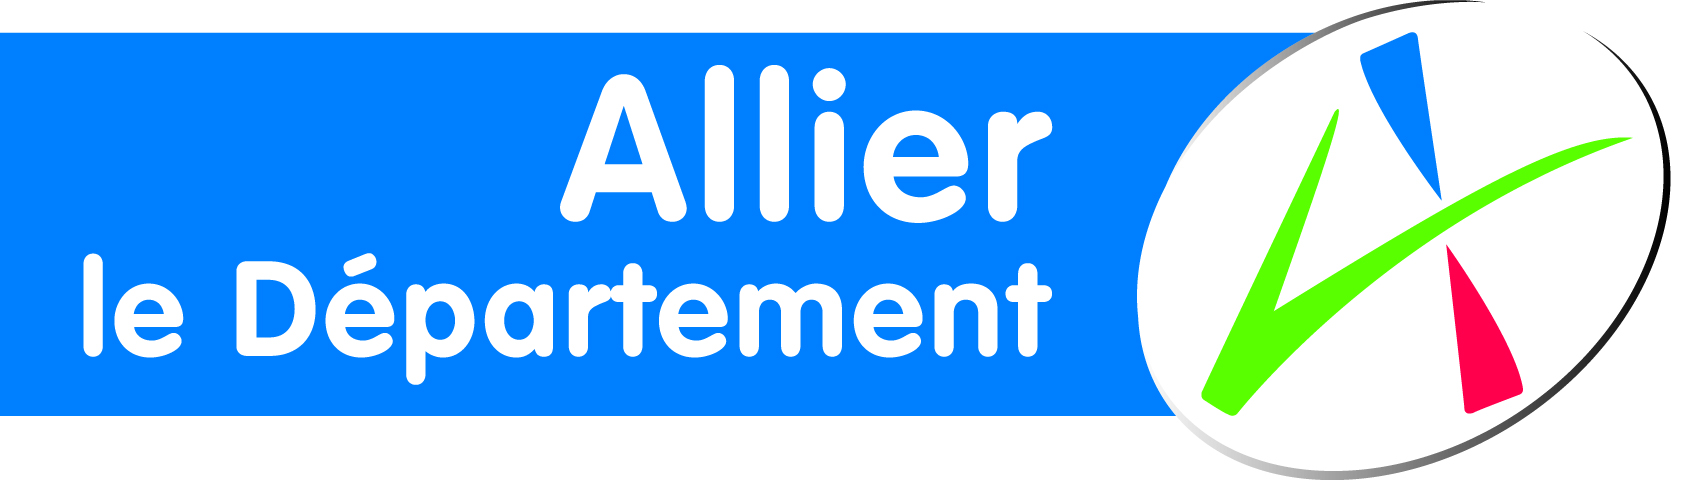 Allier le Departement bleu